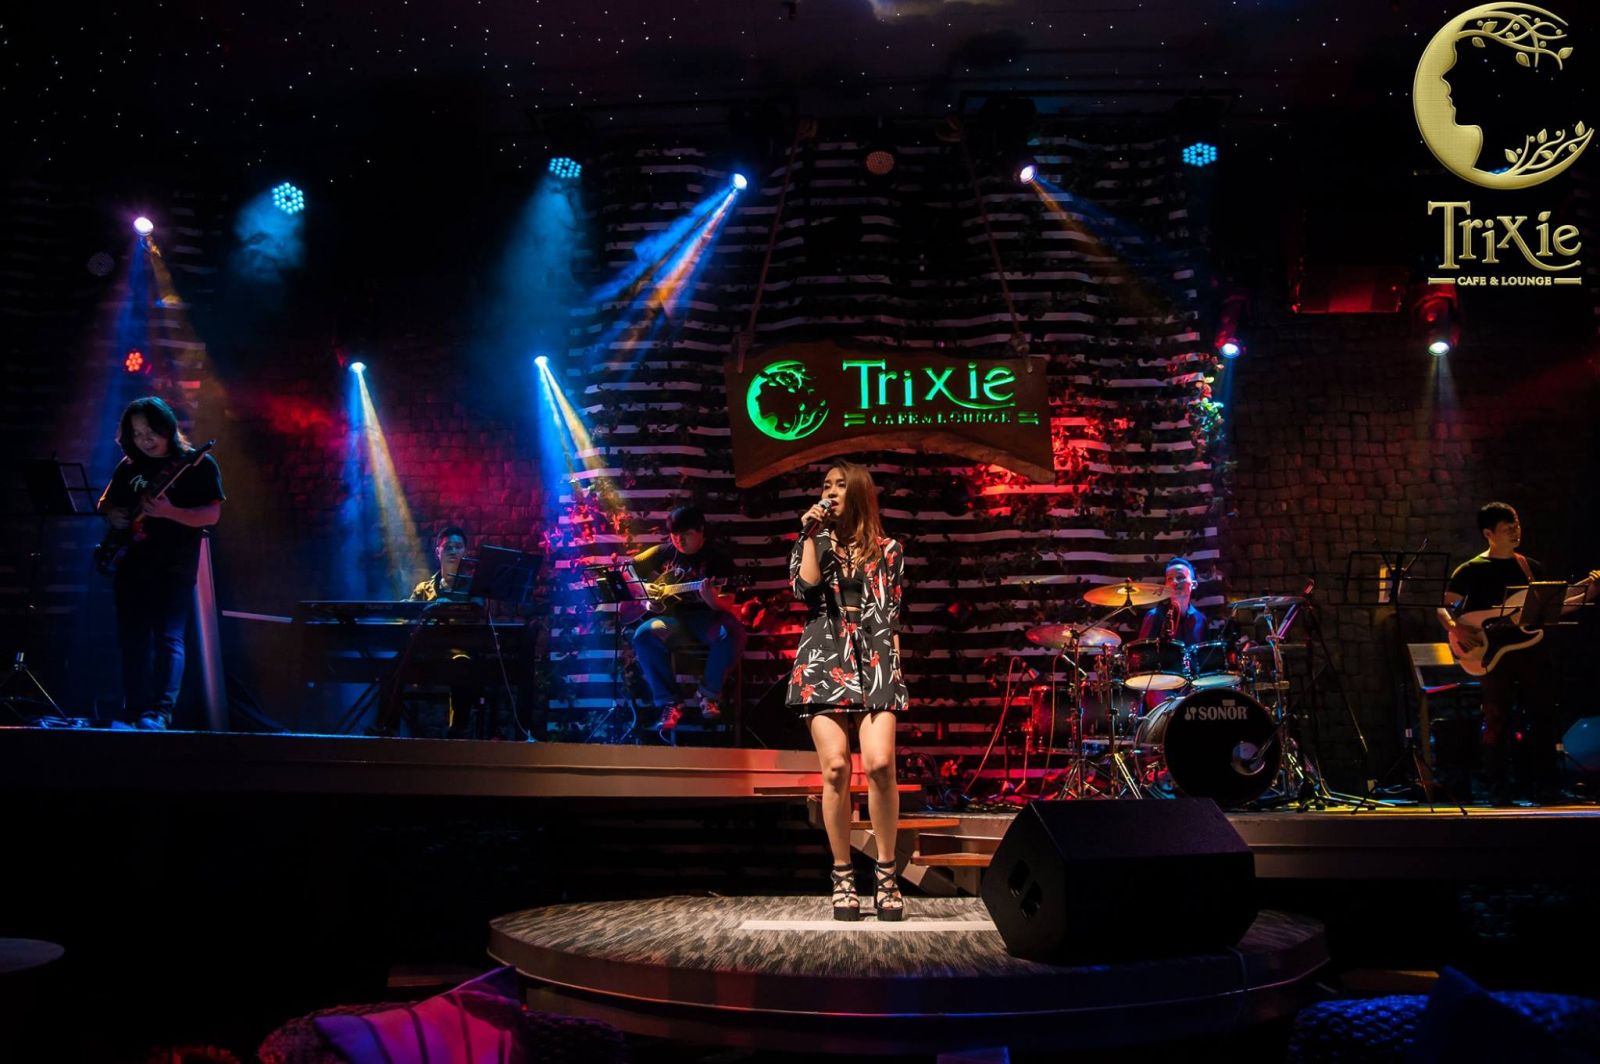 Gợi lại cảm xúc tuổi trẻ với những ca khúc nhạc ngoại bất hủ trong đêm nhạc quốc tế tại Trixie cafe